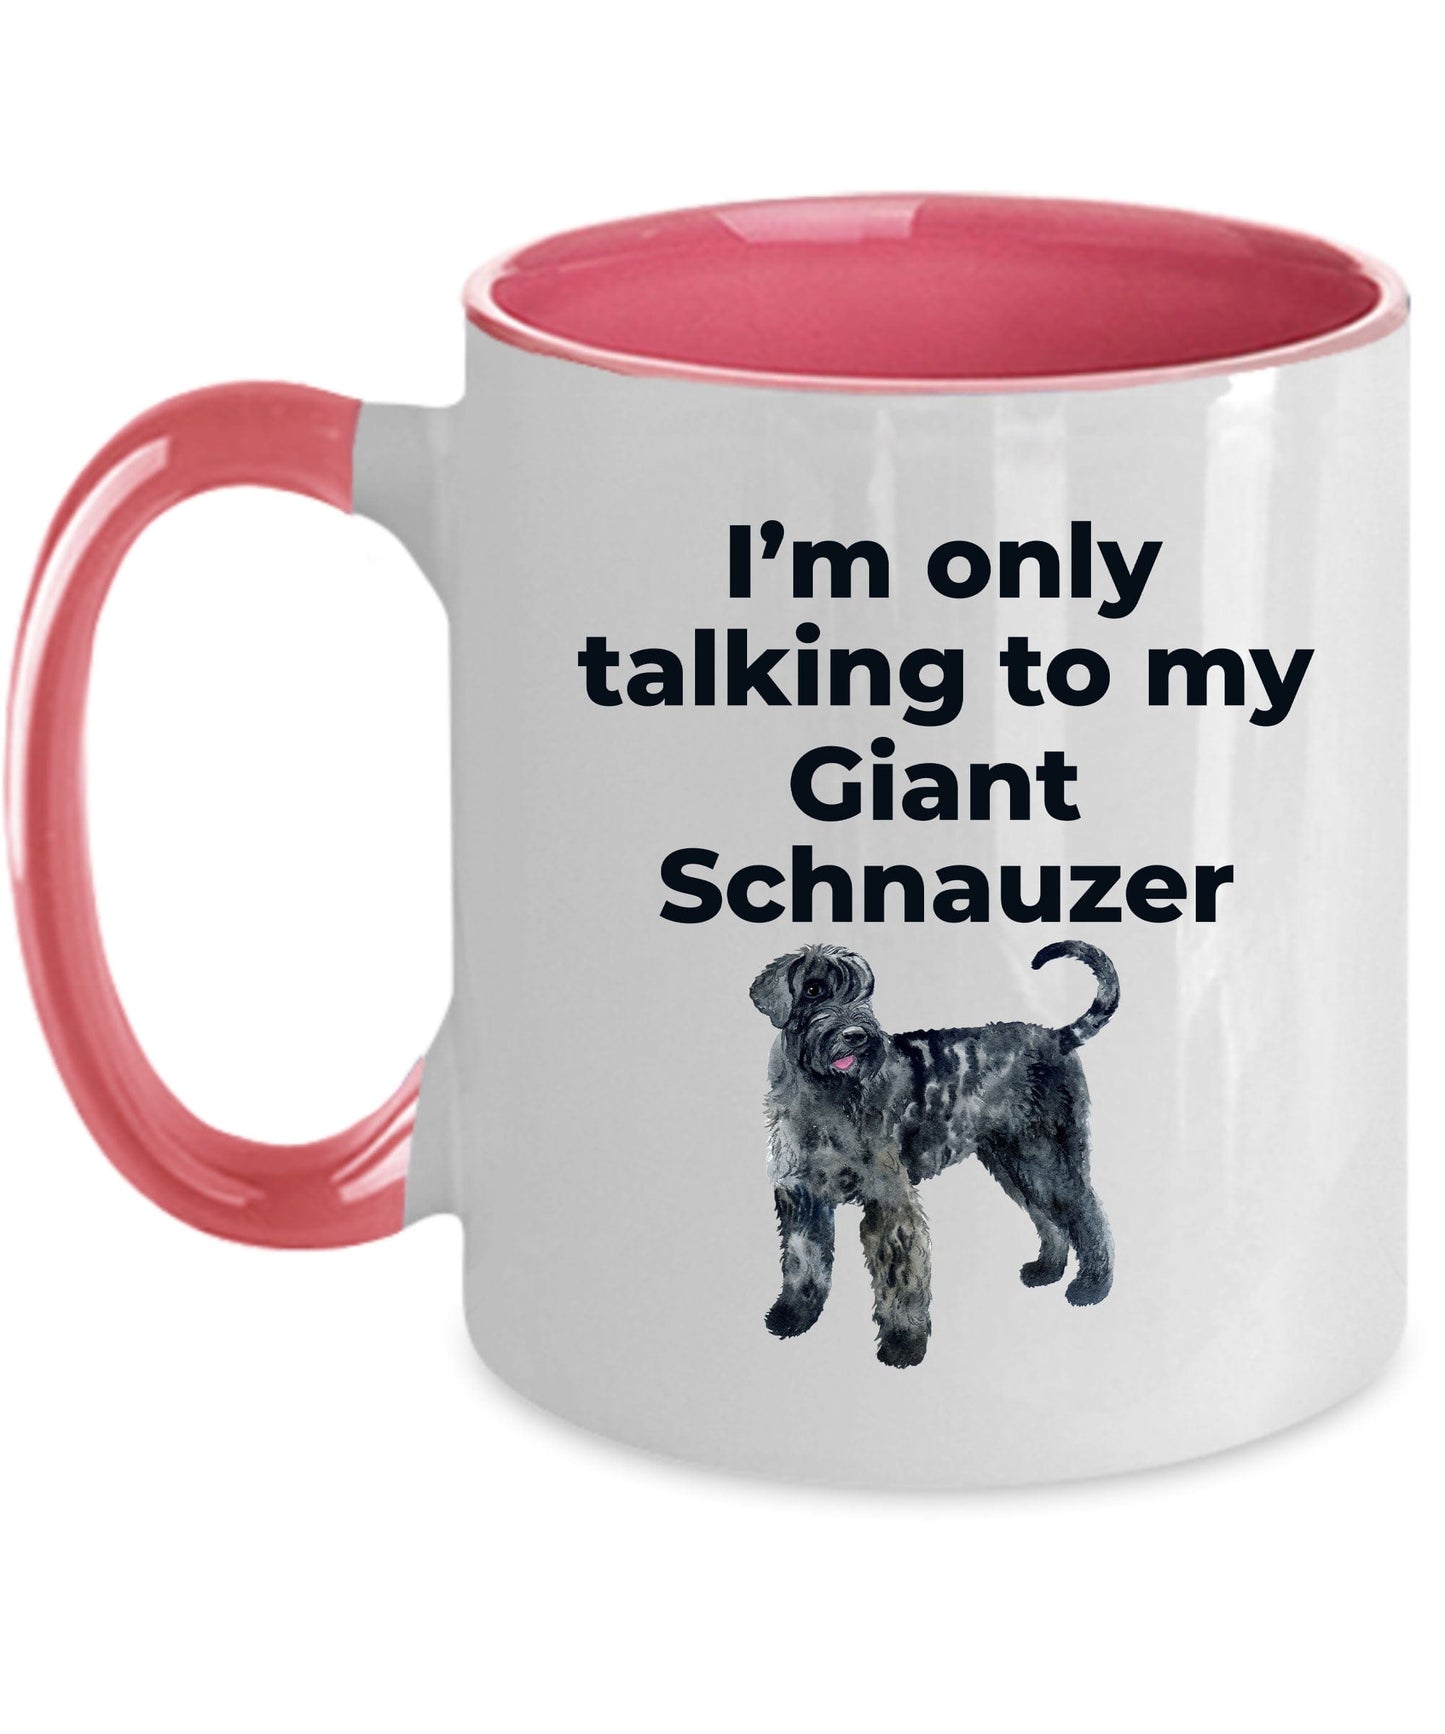 Giant Schnauzer dog lover coffee mug - I'm only talking to my Giant Schnauzer